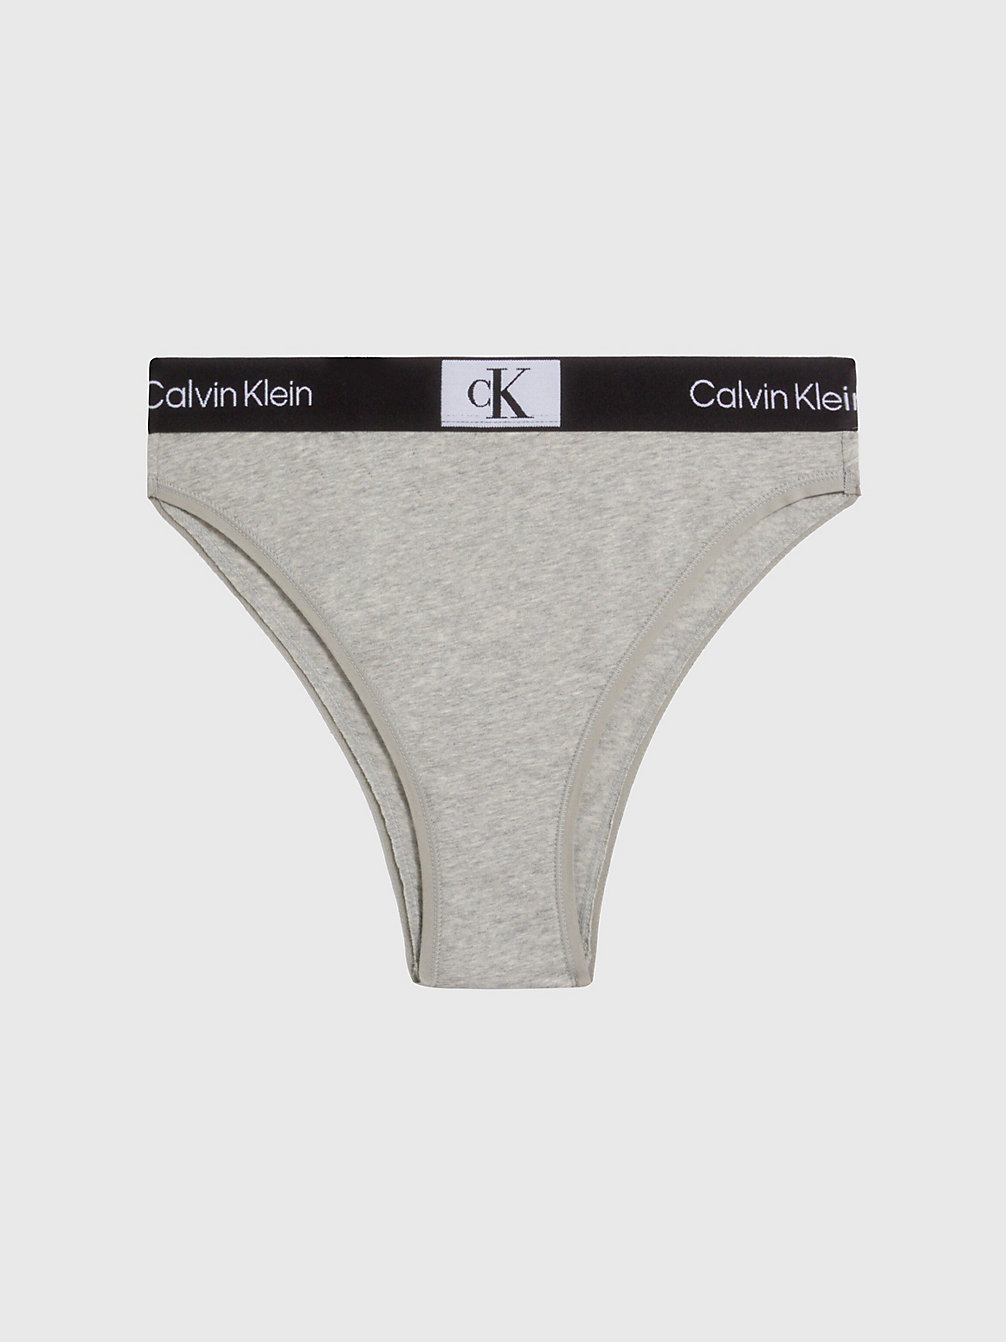 GREY HEATHER Brazilian Slip Mit Hoher Taille - Ck96 undefined Damen Calvin Klein